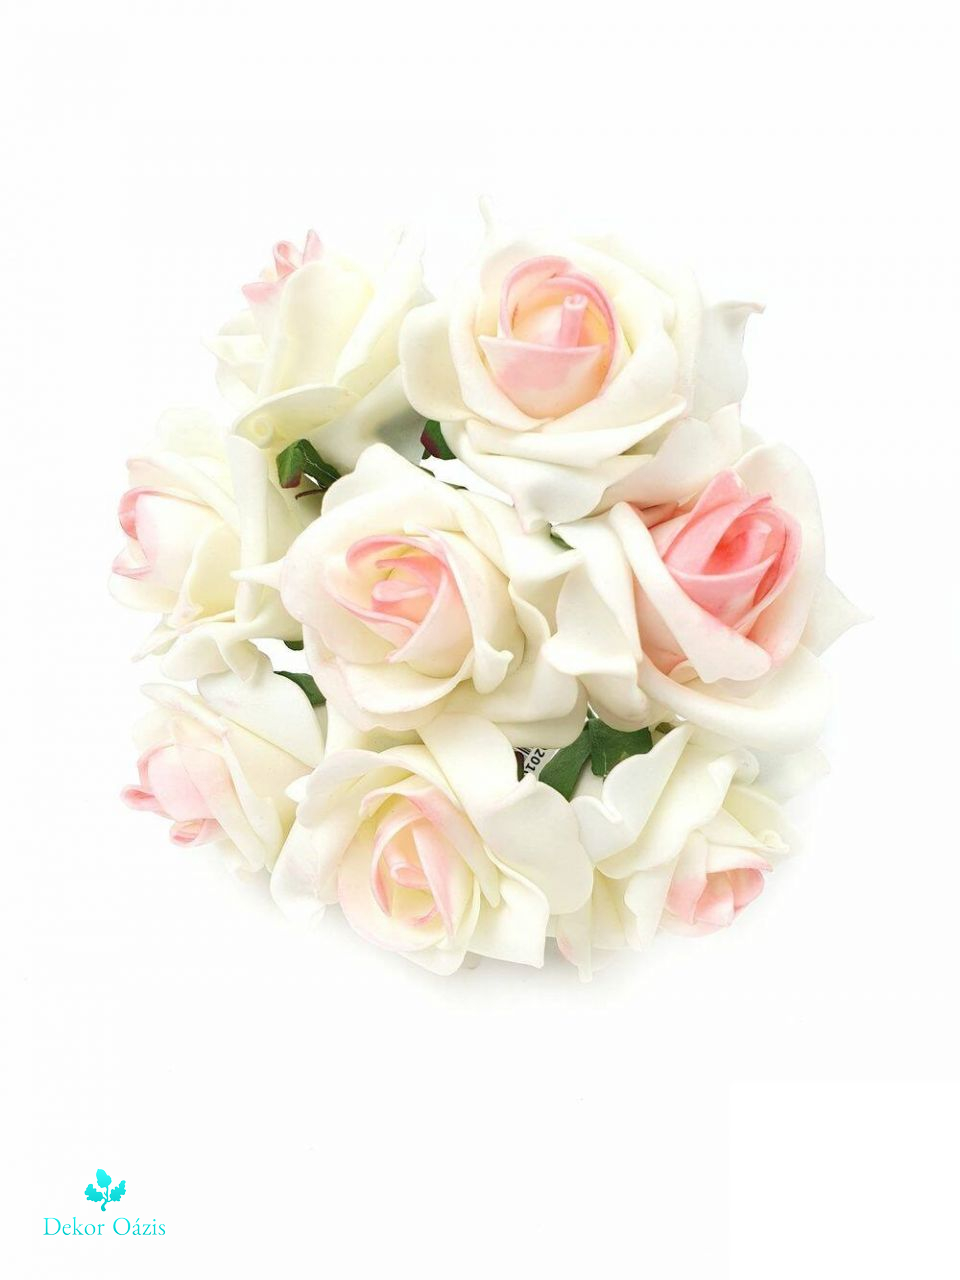 Drótos polyfoam rózsa - Több színben